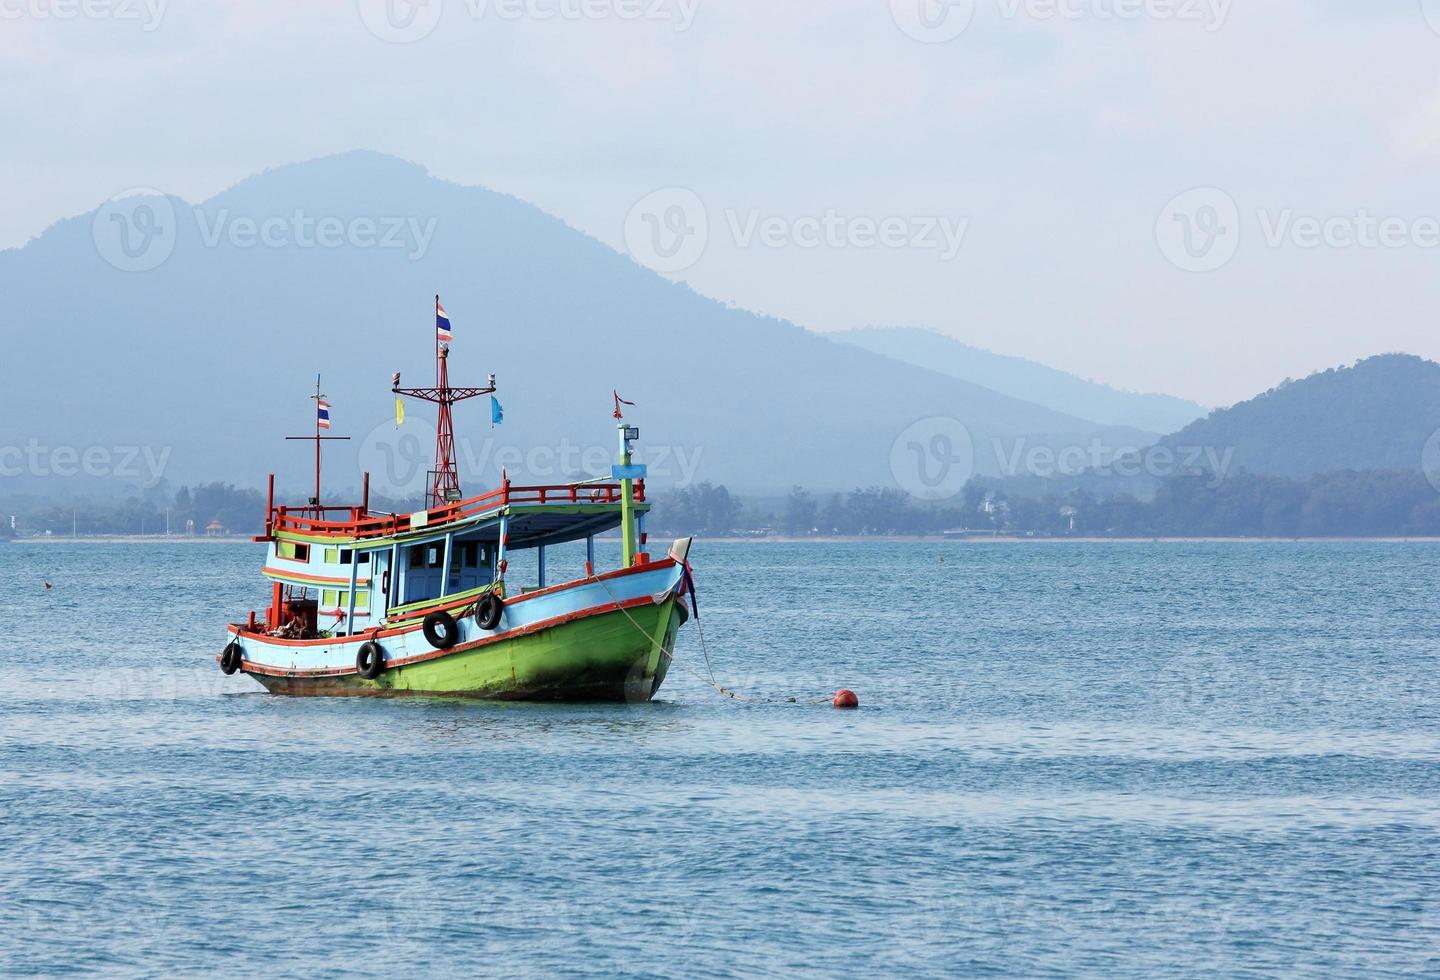 barco de pesca en el mar de tailandia foto